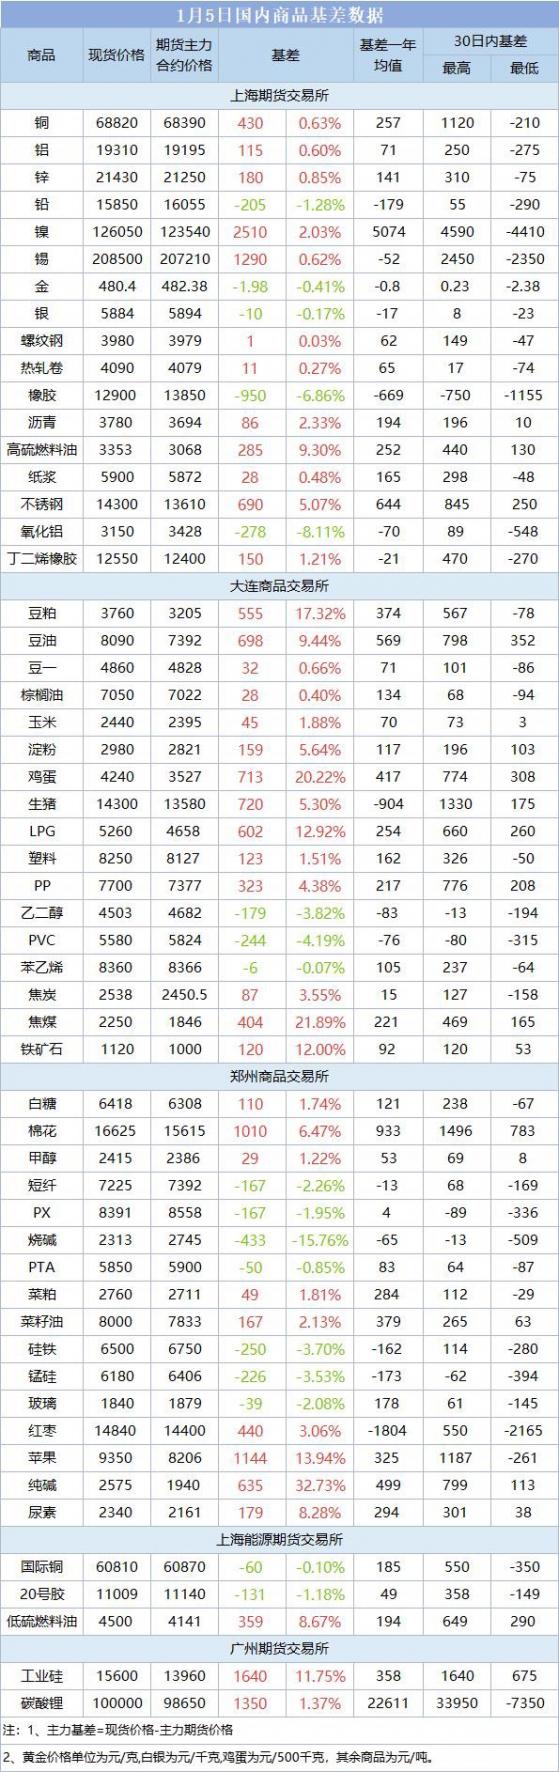 期市盘前早参 | 上海航交所：红海地区紧张局势未缓解，亚欧航线市场运价继续上涨